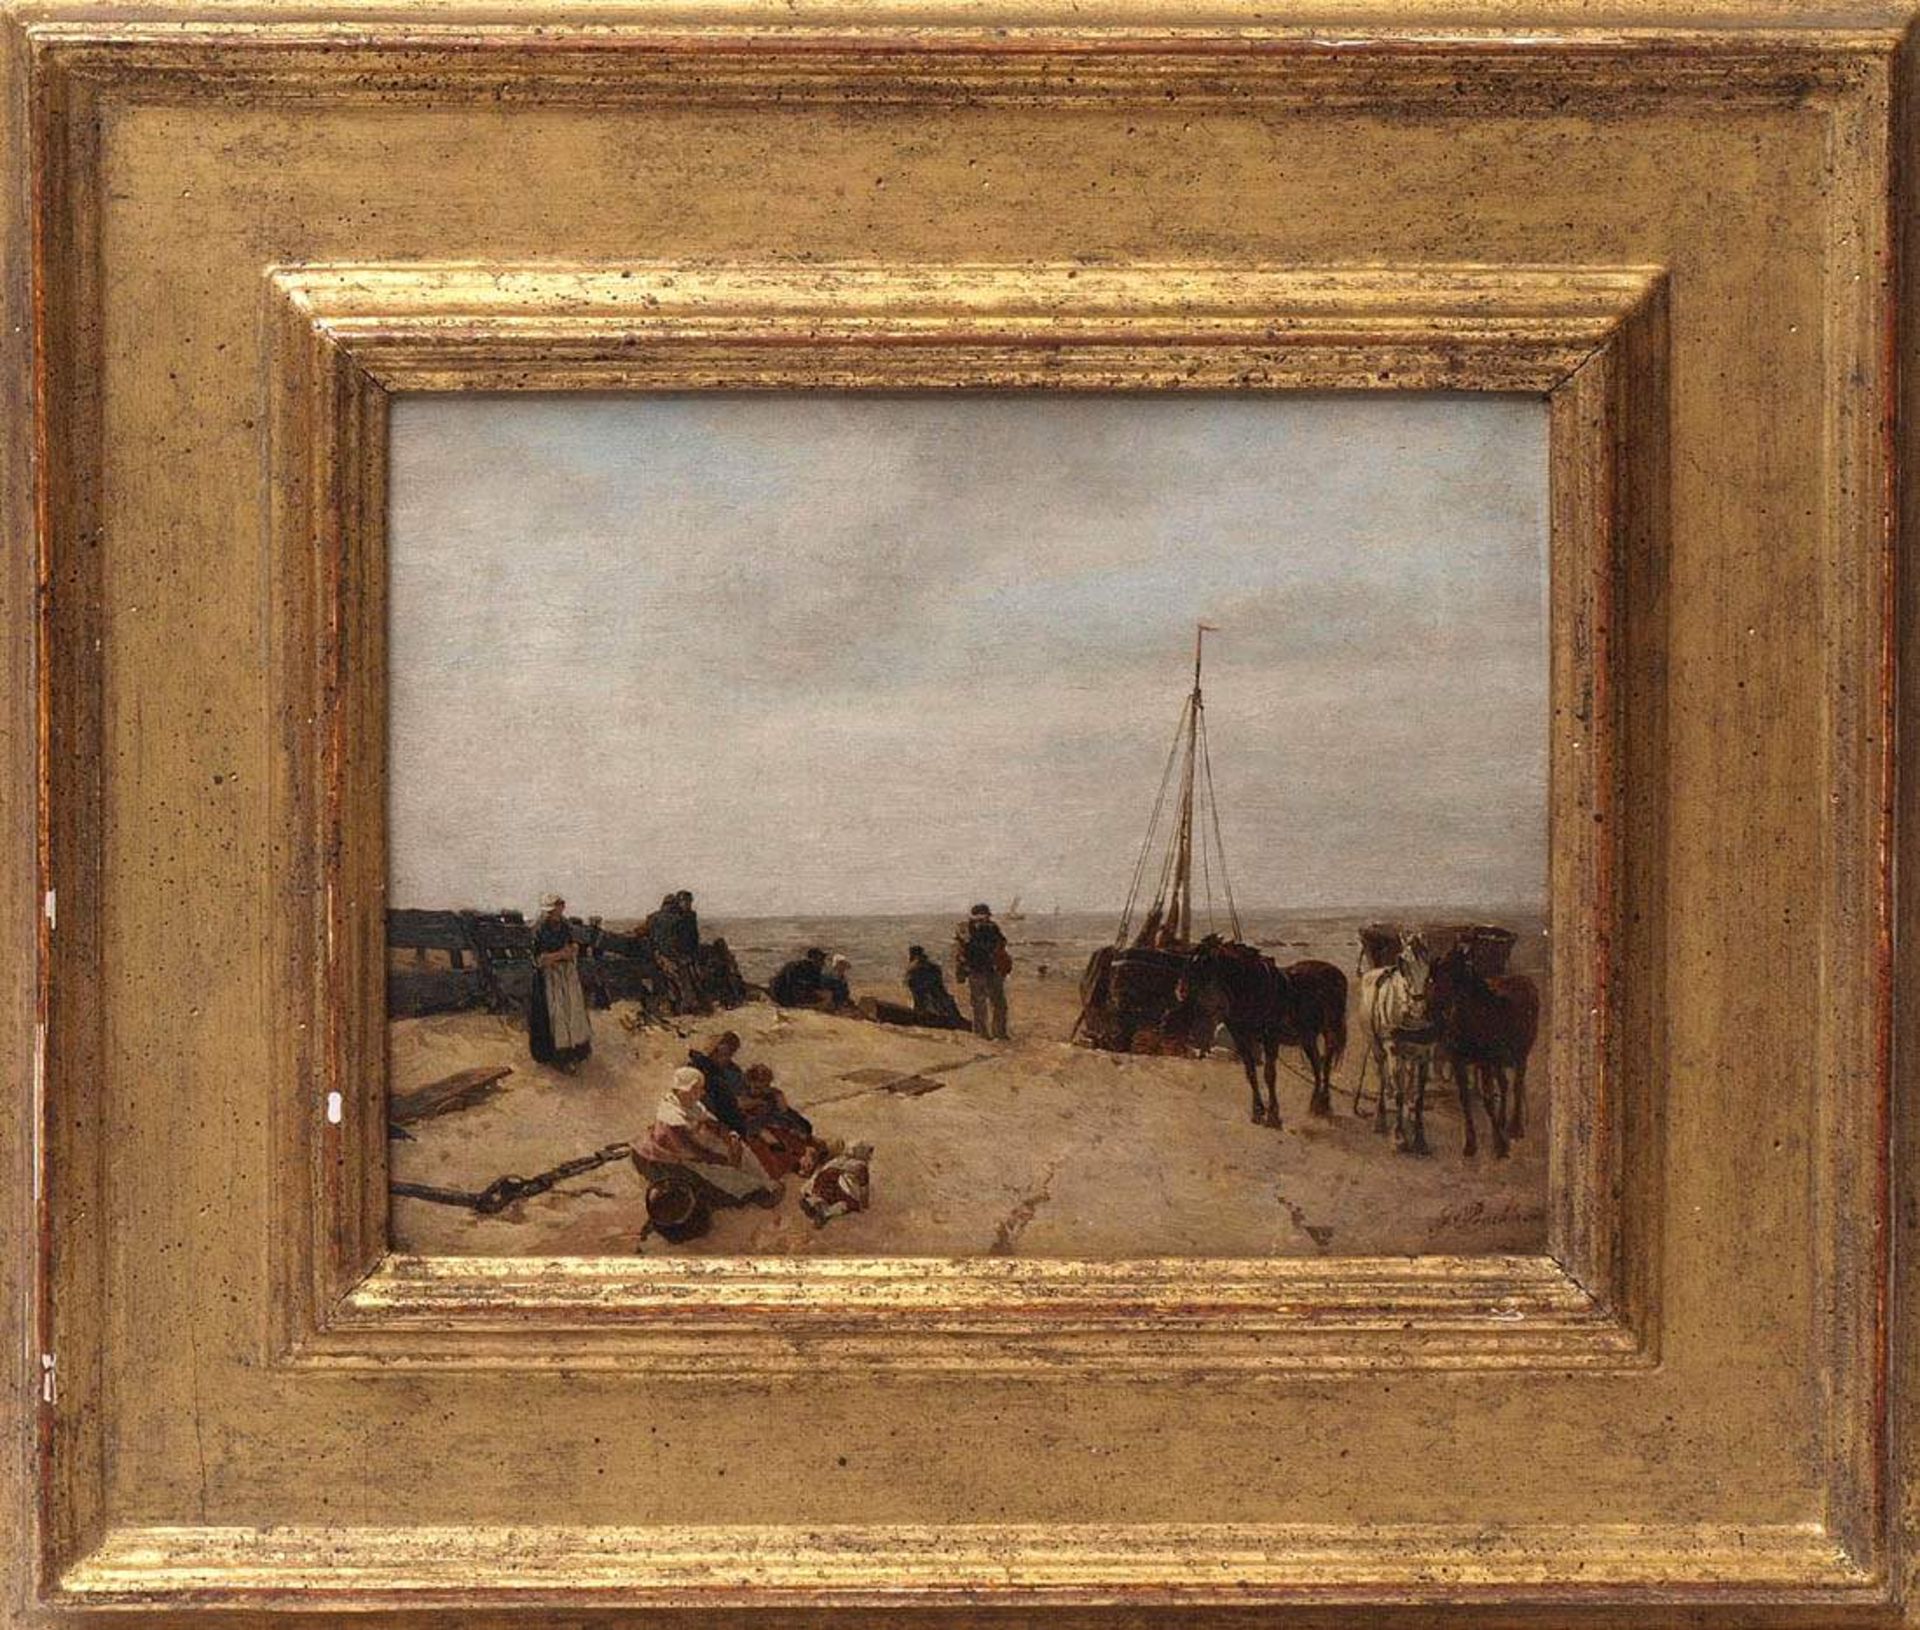 von Bochmann, Gregor, 1850 - 1930Strandszene mit Boot und Pferdegespann, daneben reiche